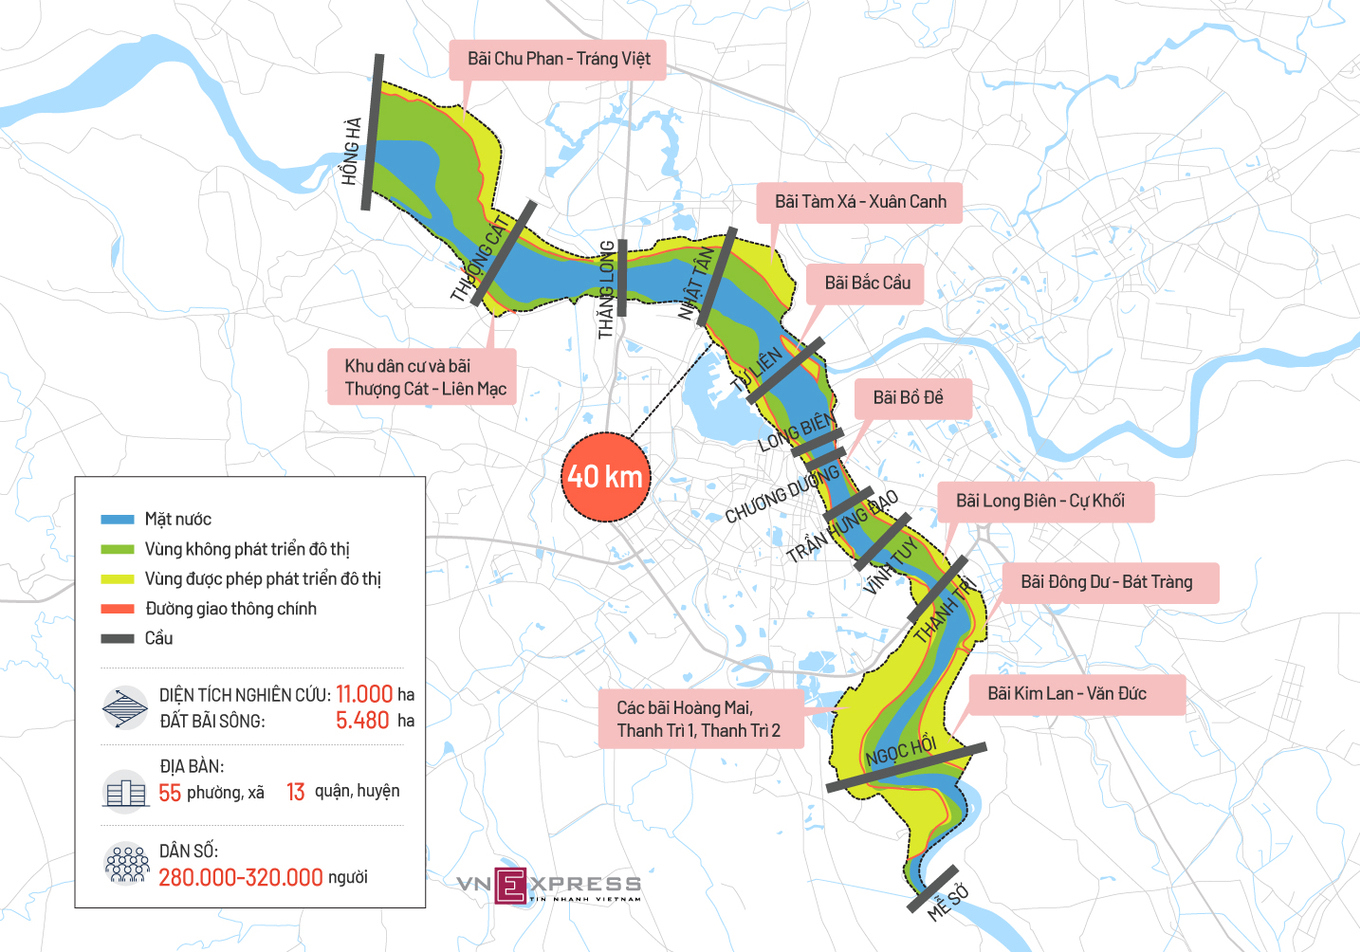 Cuối năm 2021, đồ án quy hoạch sông Hồng sẽ được duyệt - Ảnh 1